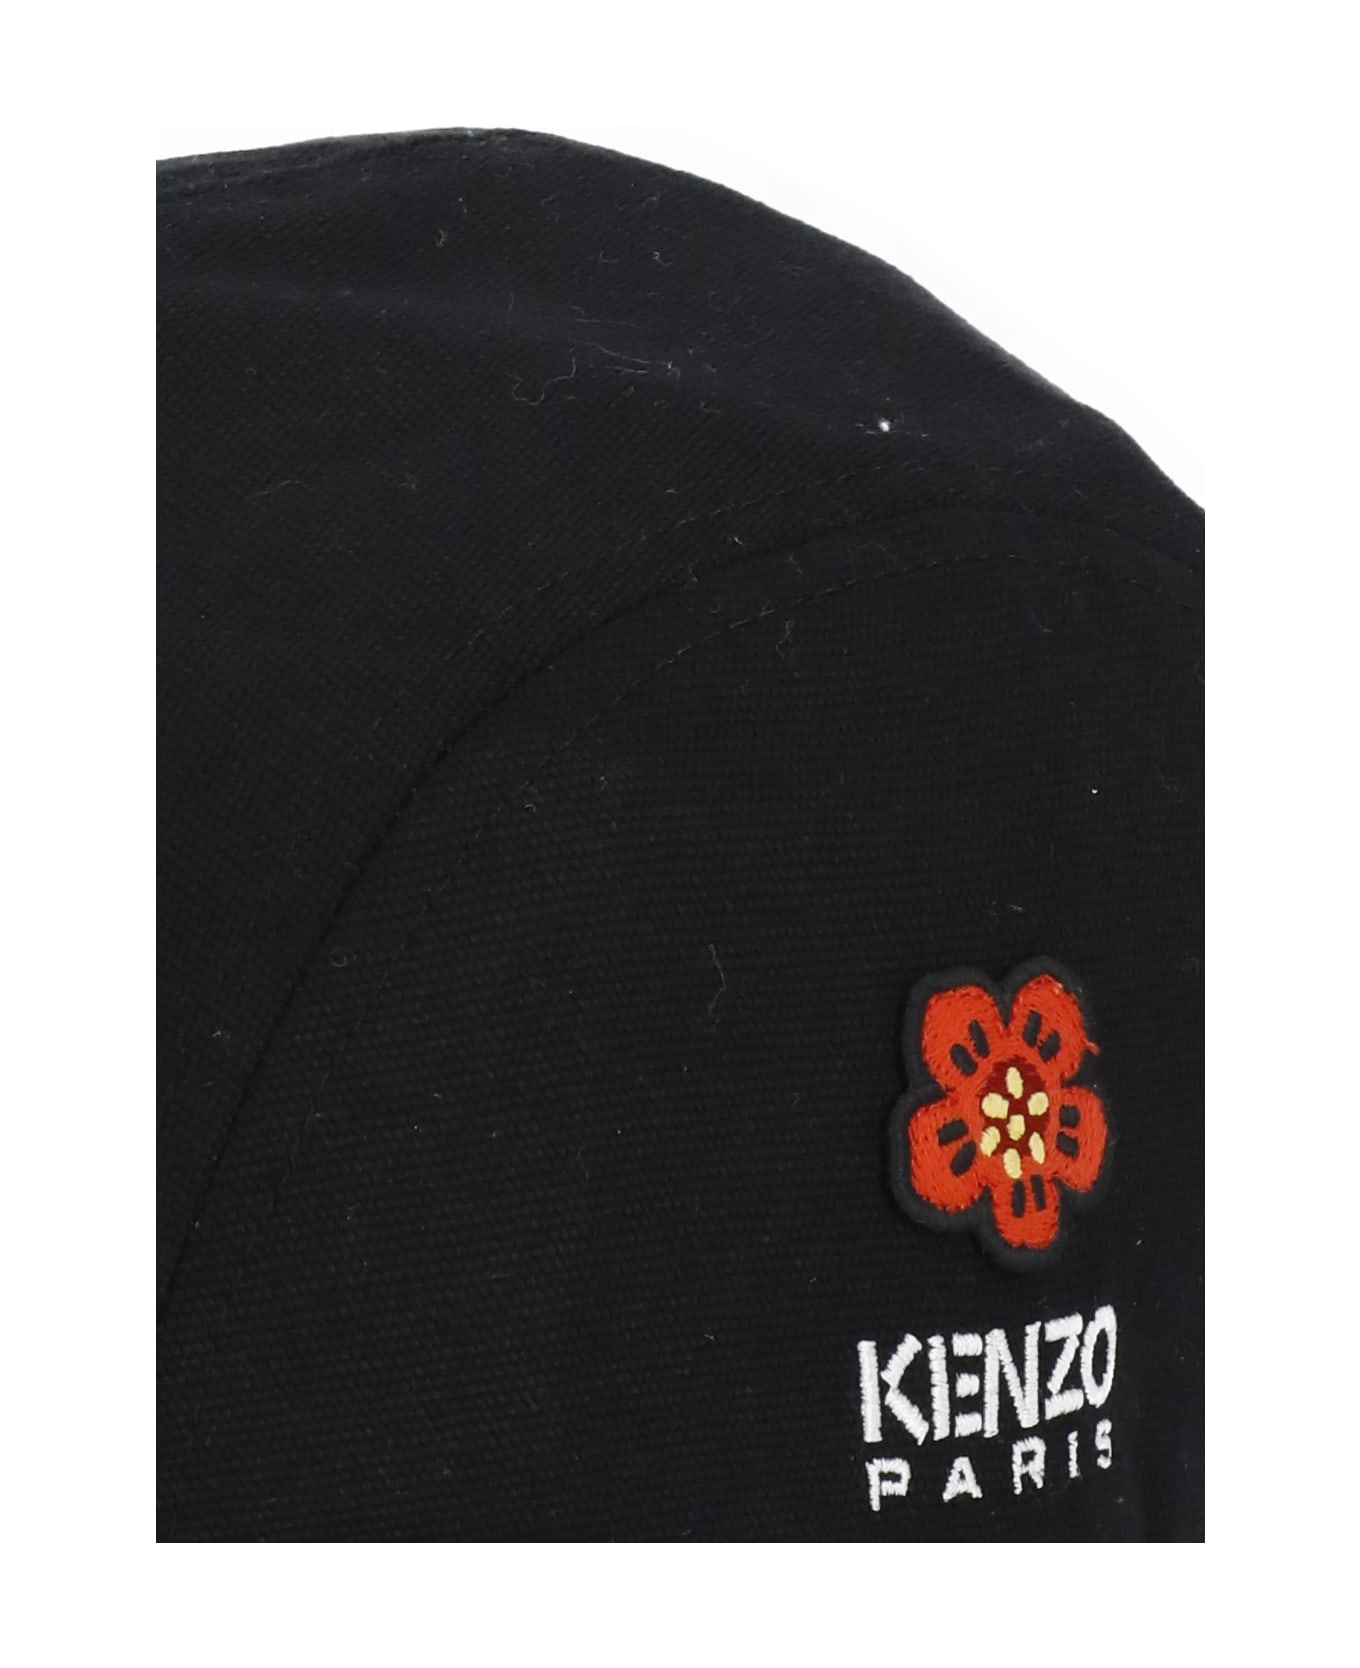 Kenzo Boke Flower Baseball Cap - Black 帽子